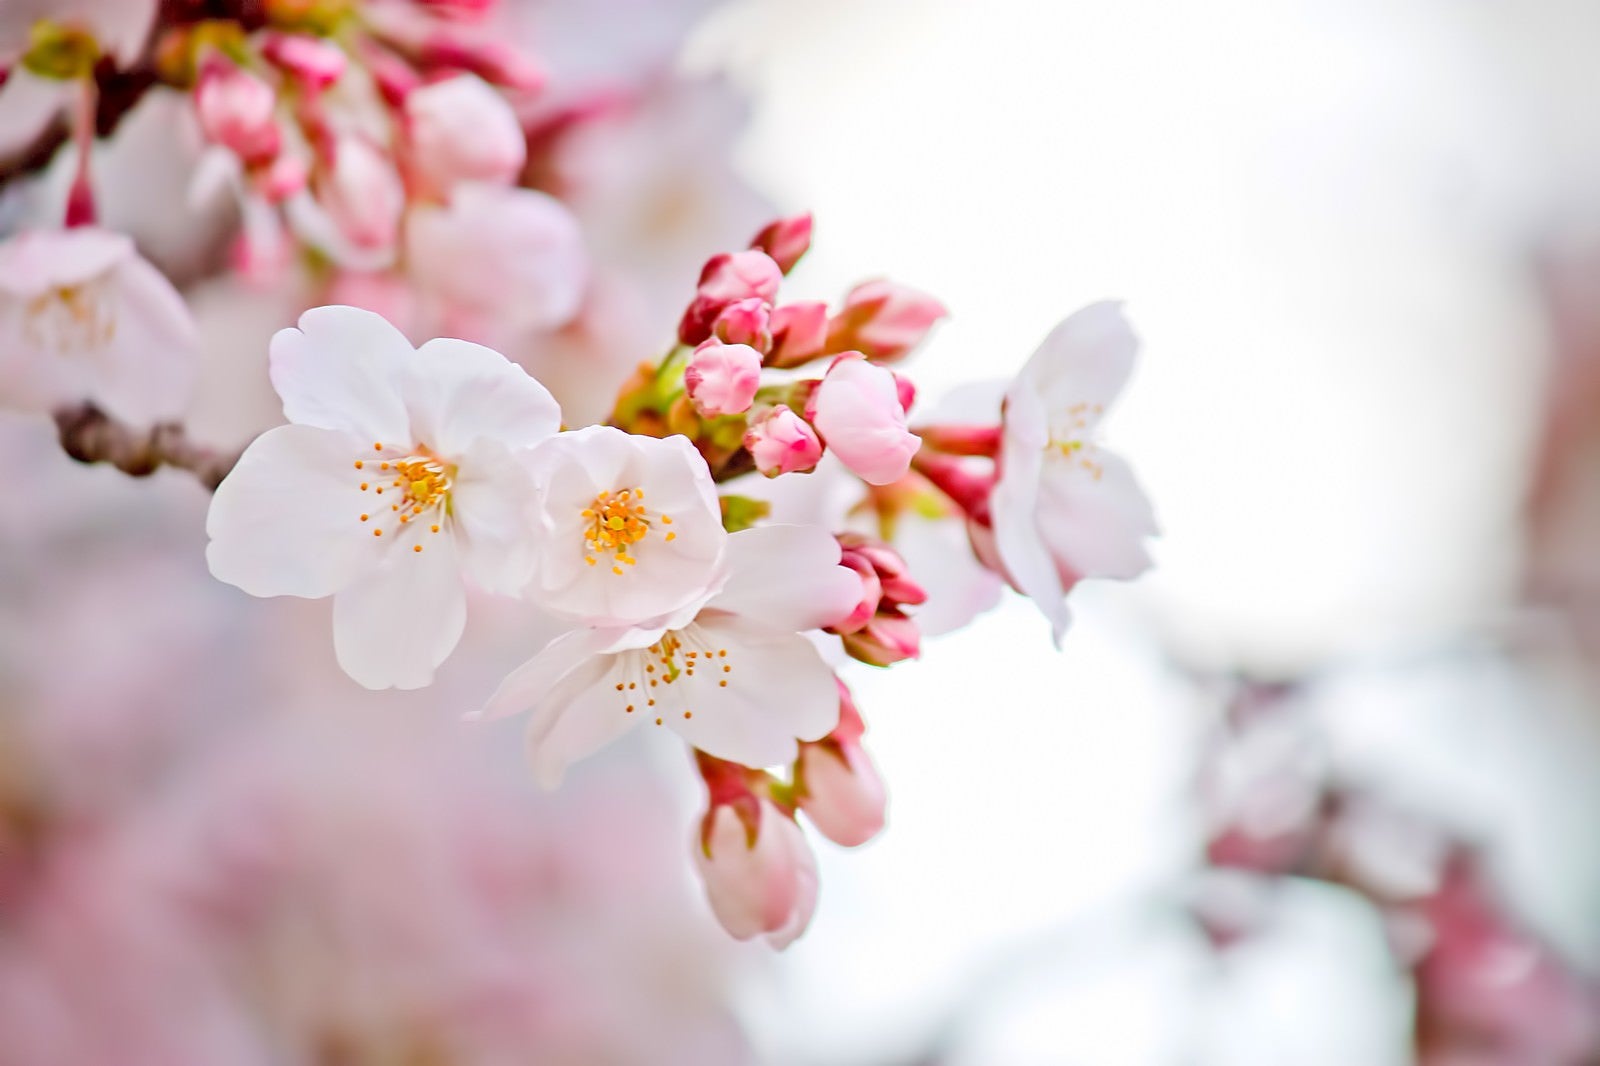 「咲き始めた桜」の写真